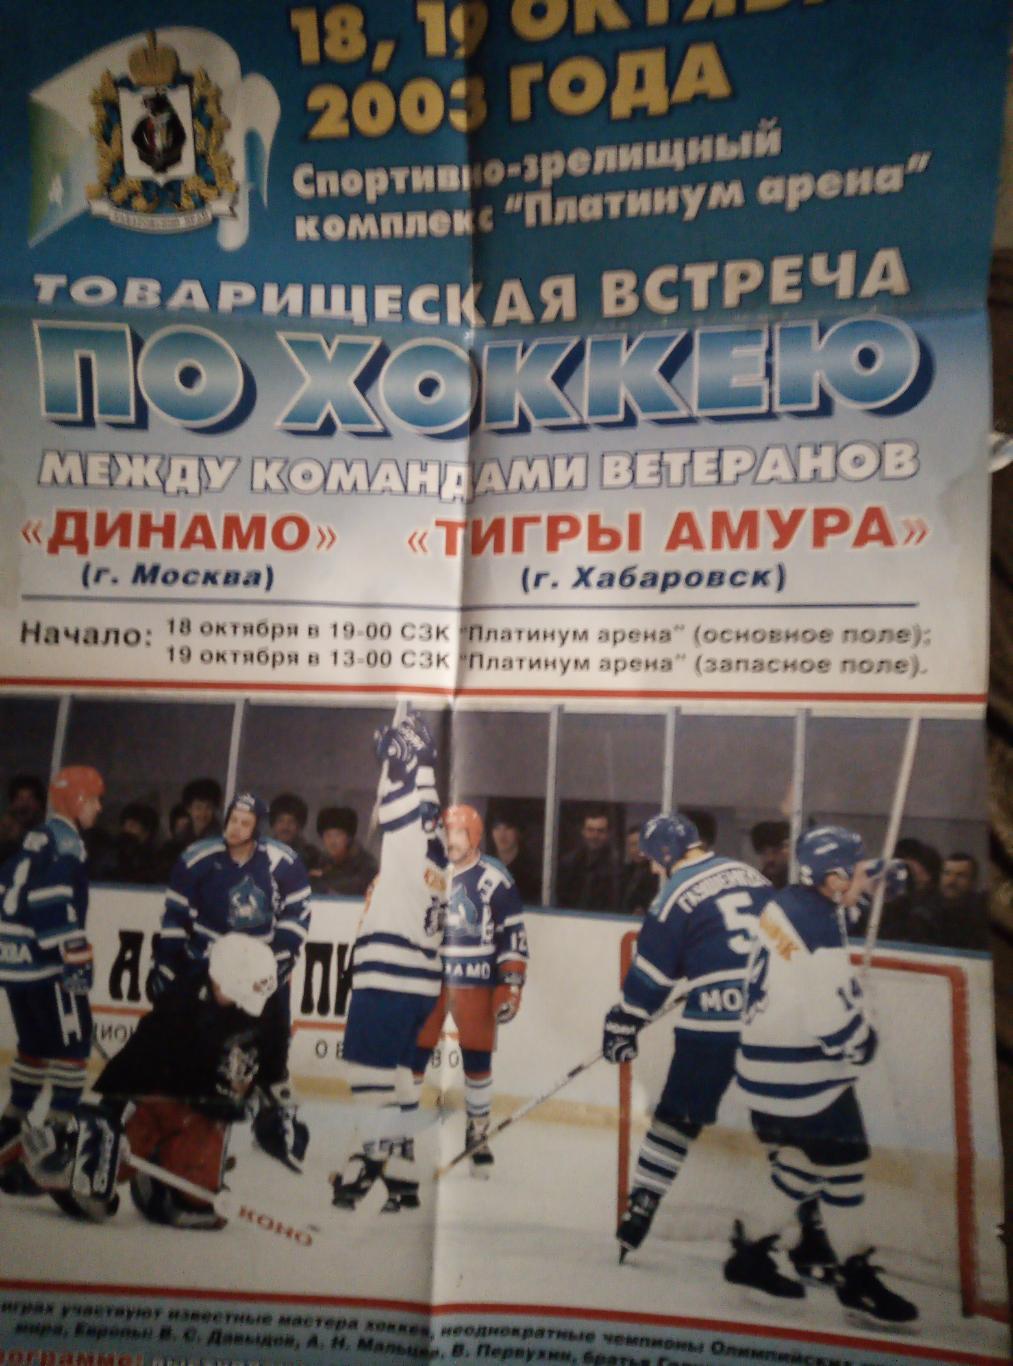 Афиша Тигры Амура Хабаровск - Динамо Москва - 18-19.10.2003 (ветераны)